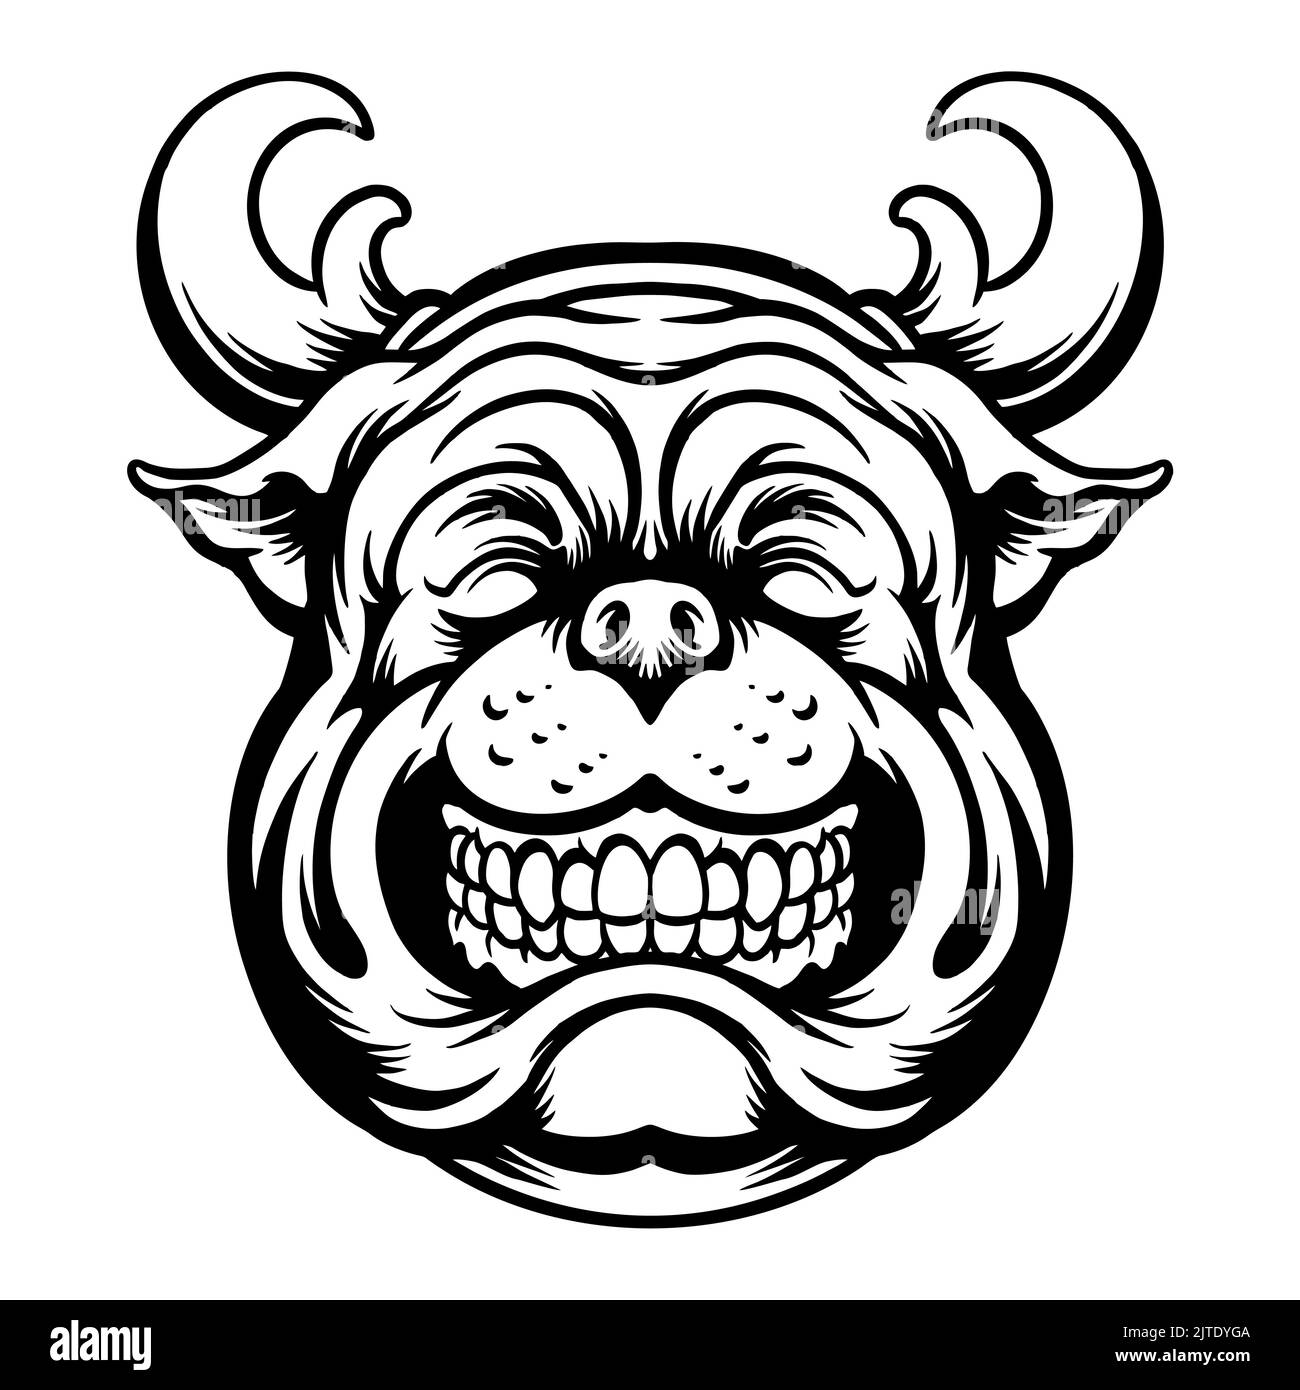 Noël Bulldog Mascot Silhouette illustrations vectorielles pour votre travail logo, t-shirt de marchandise de mascotte, autocollants et étiquettes, affiche, message d'accueil Banque D'Images